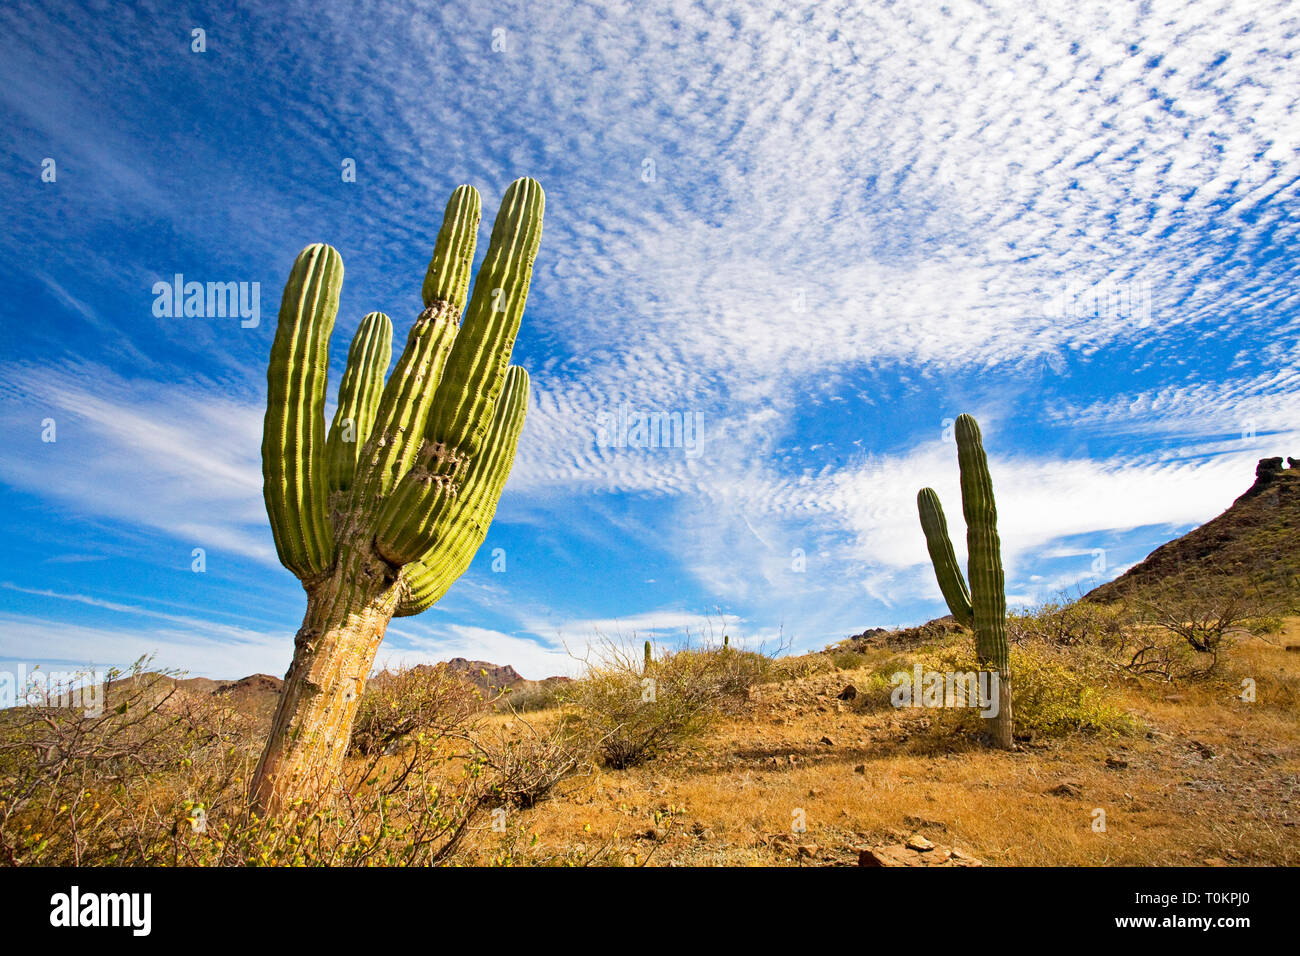 Un vecchio modello di Pachycereus Pringlei, noto anche come il gigante messicano cardon o elephant cactus, crescendo nell'area meridionale della Baja California vicino Foto Stock